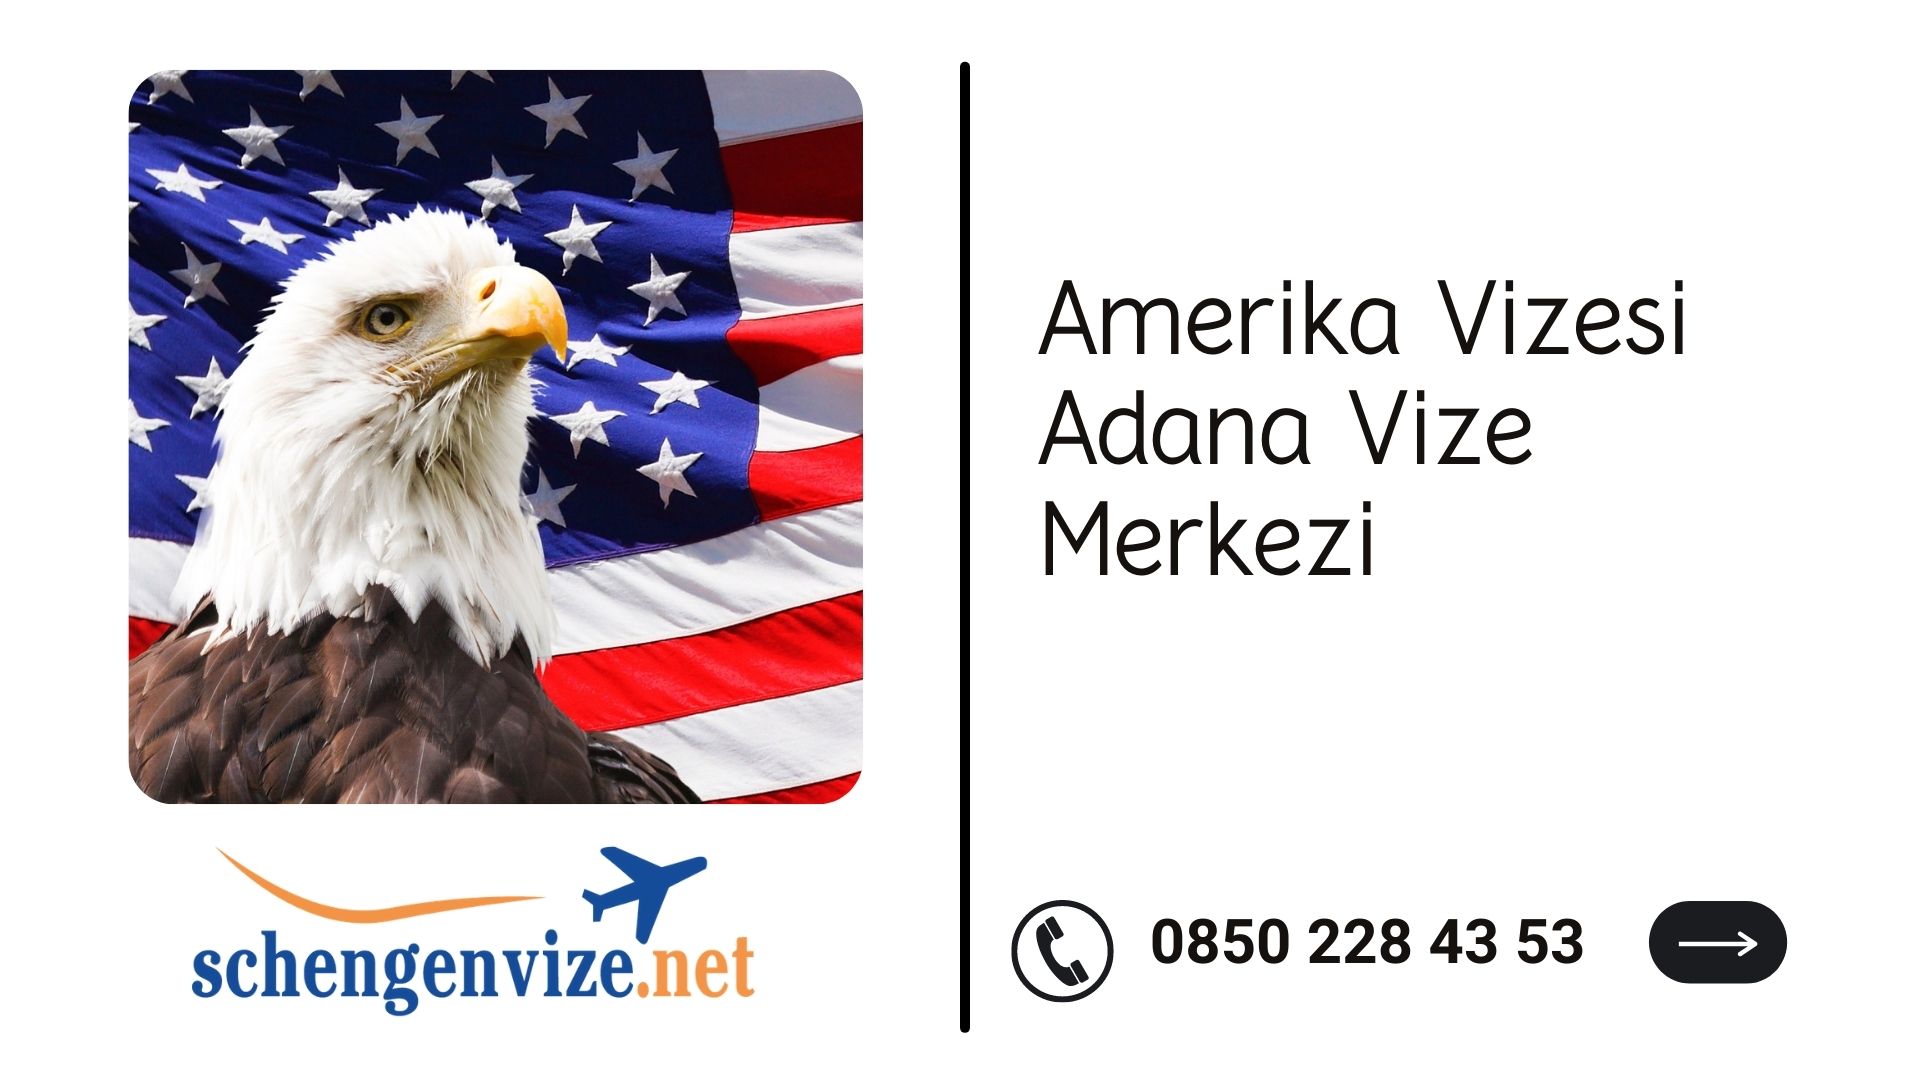 Amerika Vizesi Adana Vize Merkezi